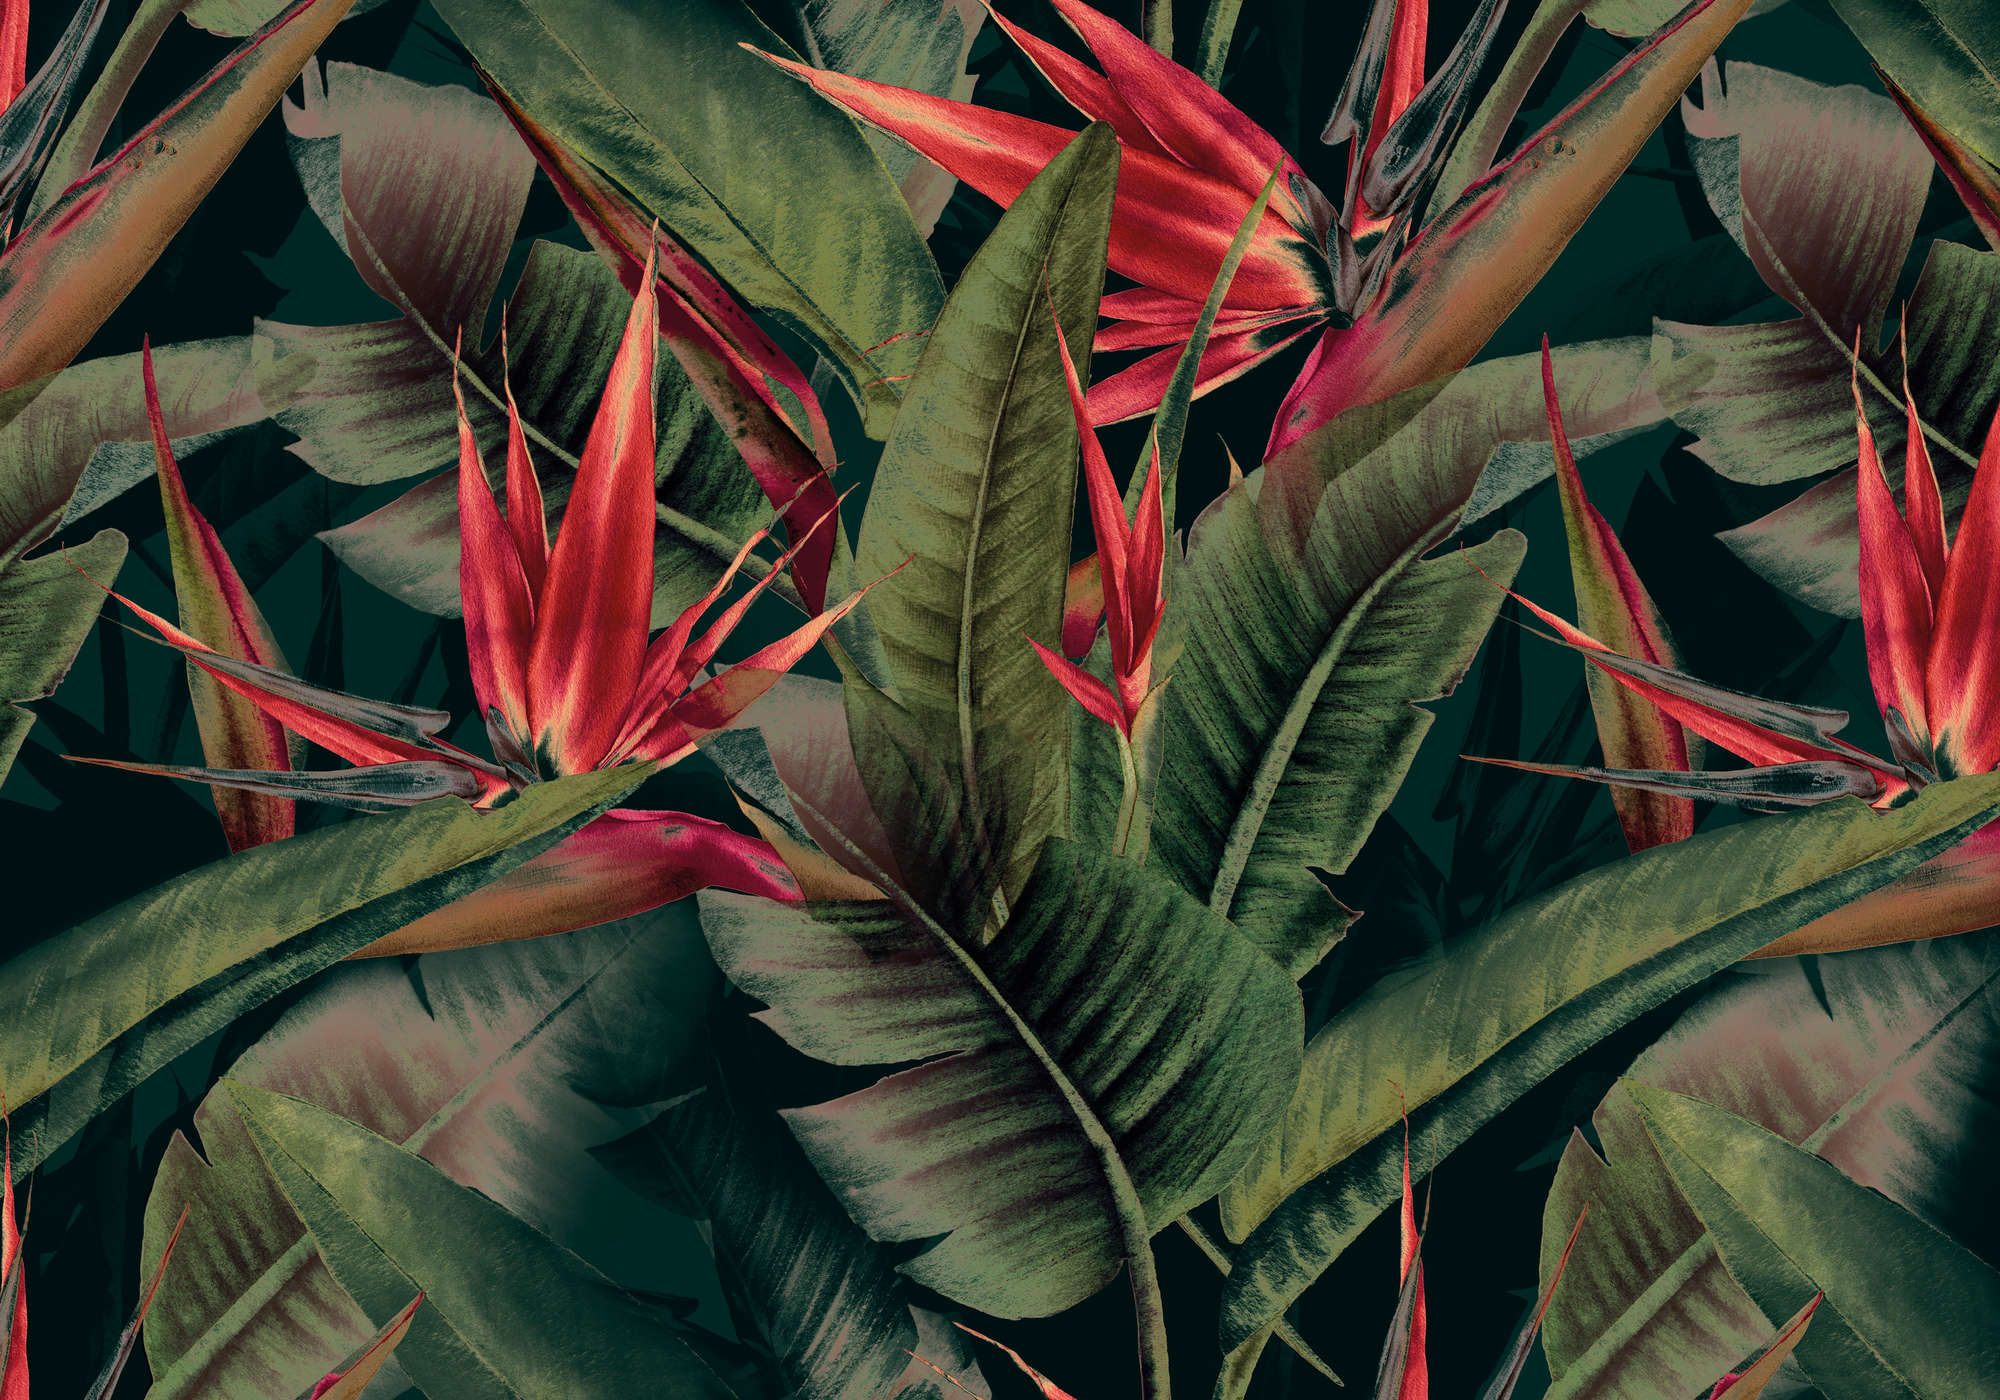             Papel pintado de la selva verde con flores rojas de aves del paraíso
        